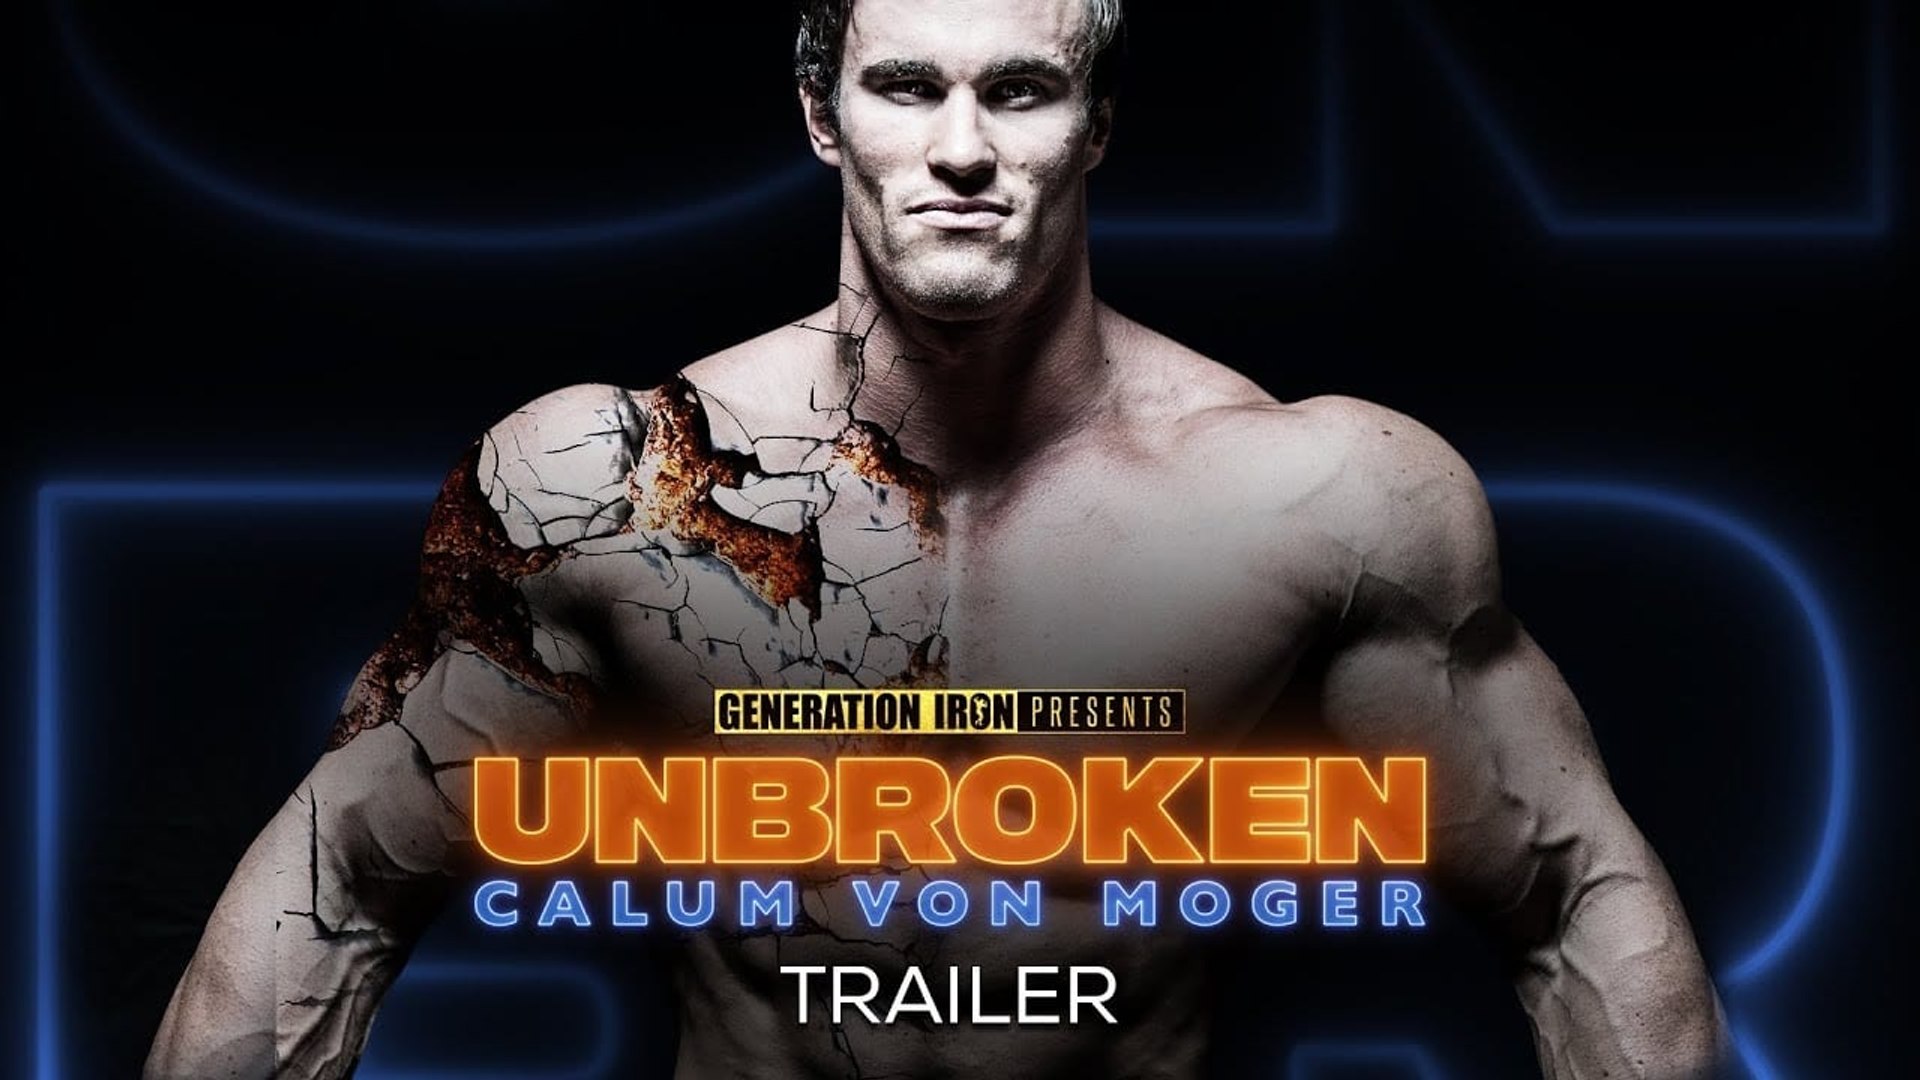 Calum Von Moger: Unbroken Trailer (2019) - video Dailymotion